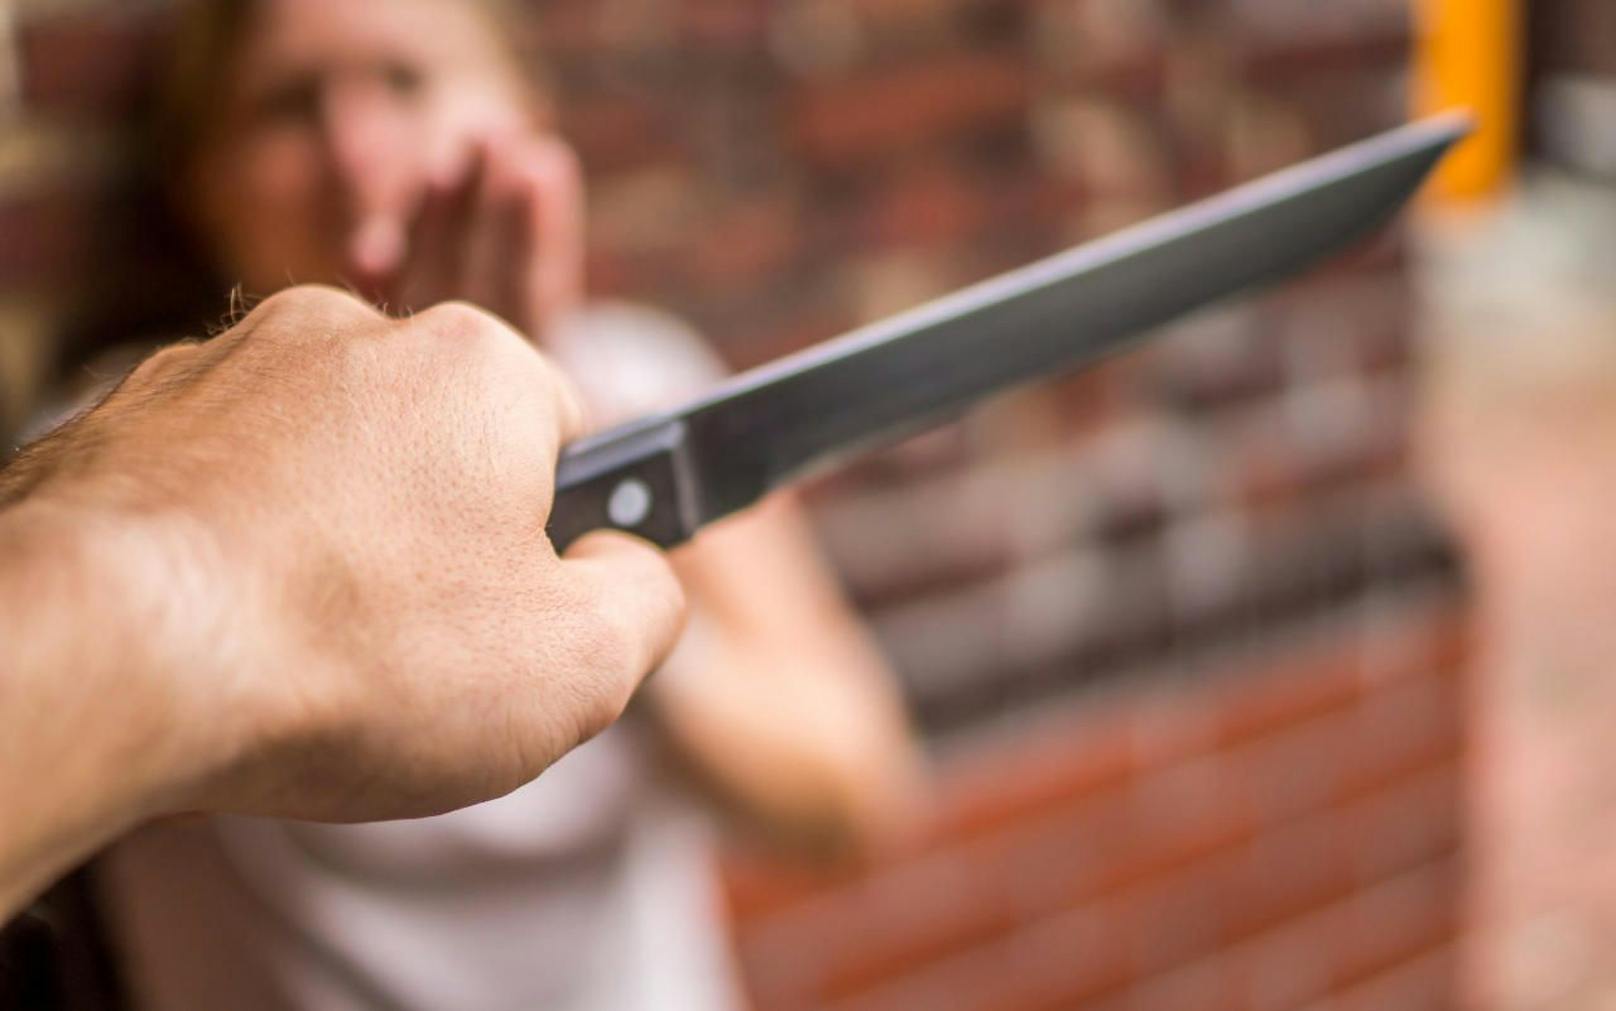 Frau wird von Mann mit Messer attackiert (Symbolbild)